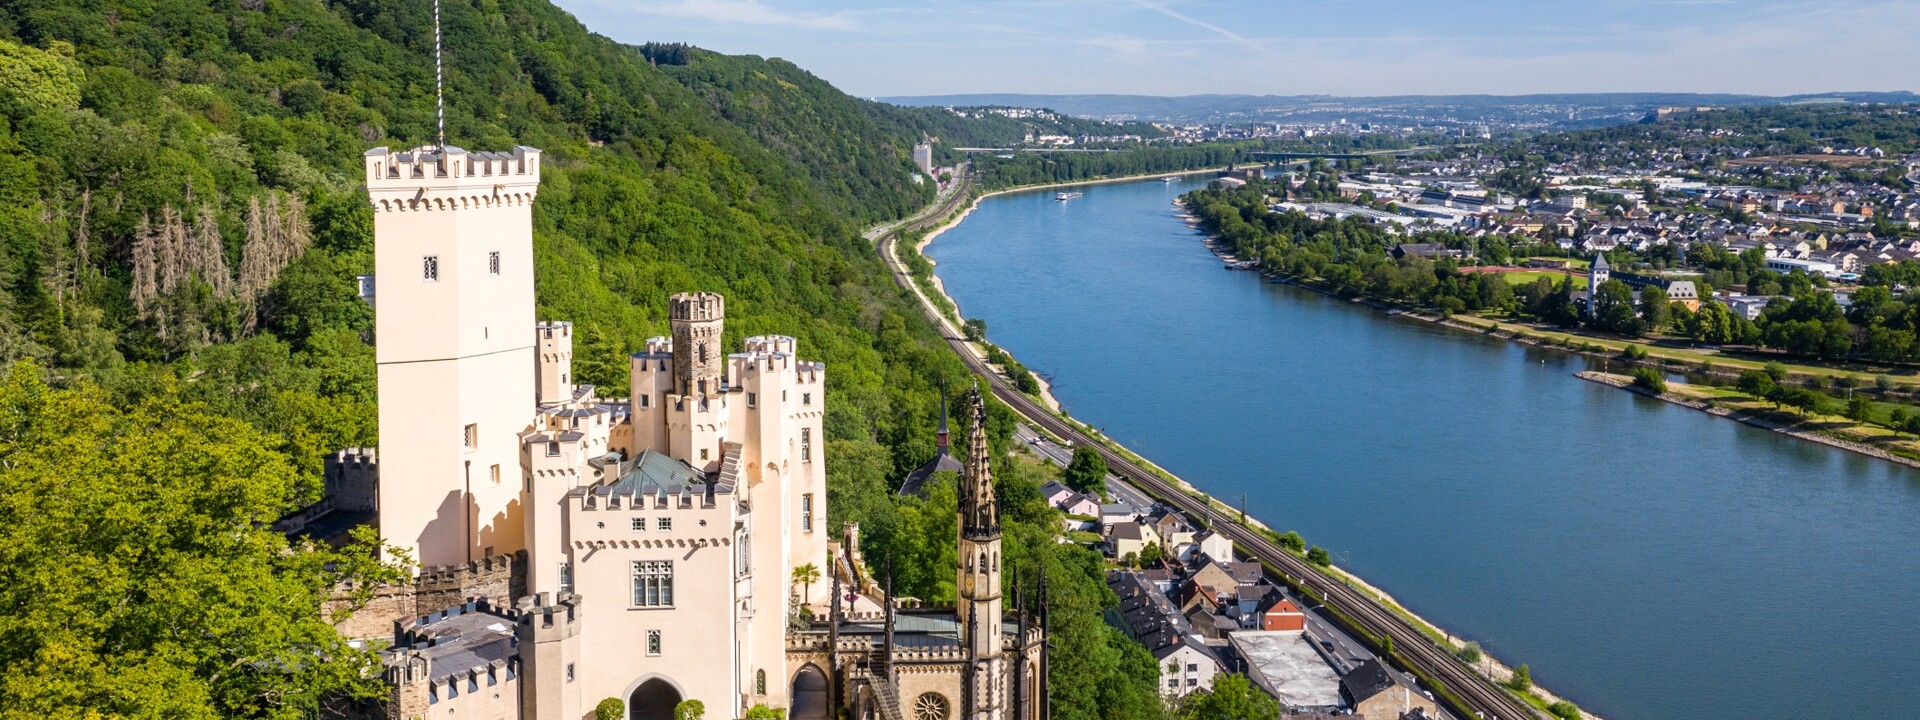 Schloss Stolzenfels mit dem Rhein im Hintergrund ©Koblenz-Touristik GmbH, Dominik Ketz 